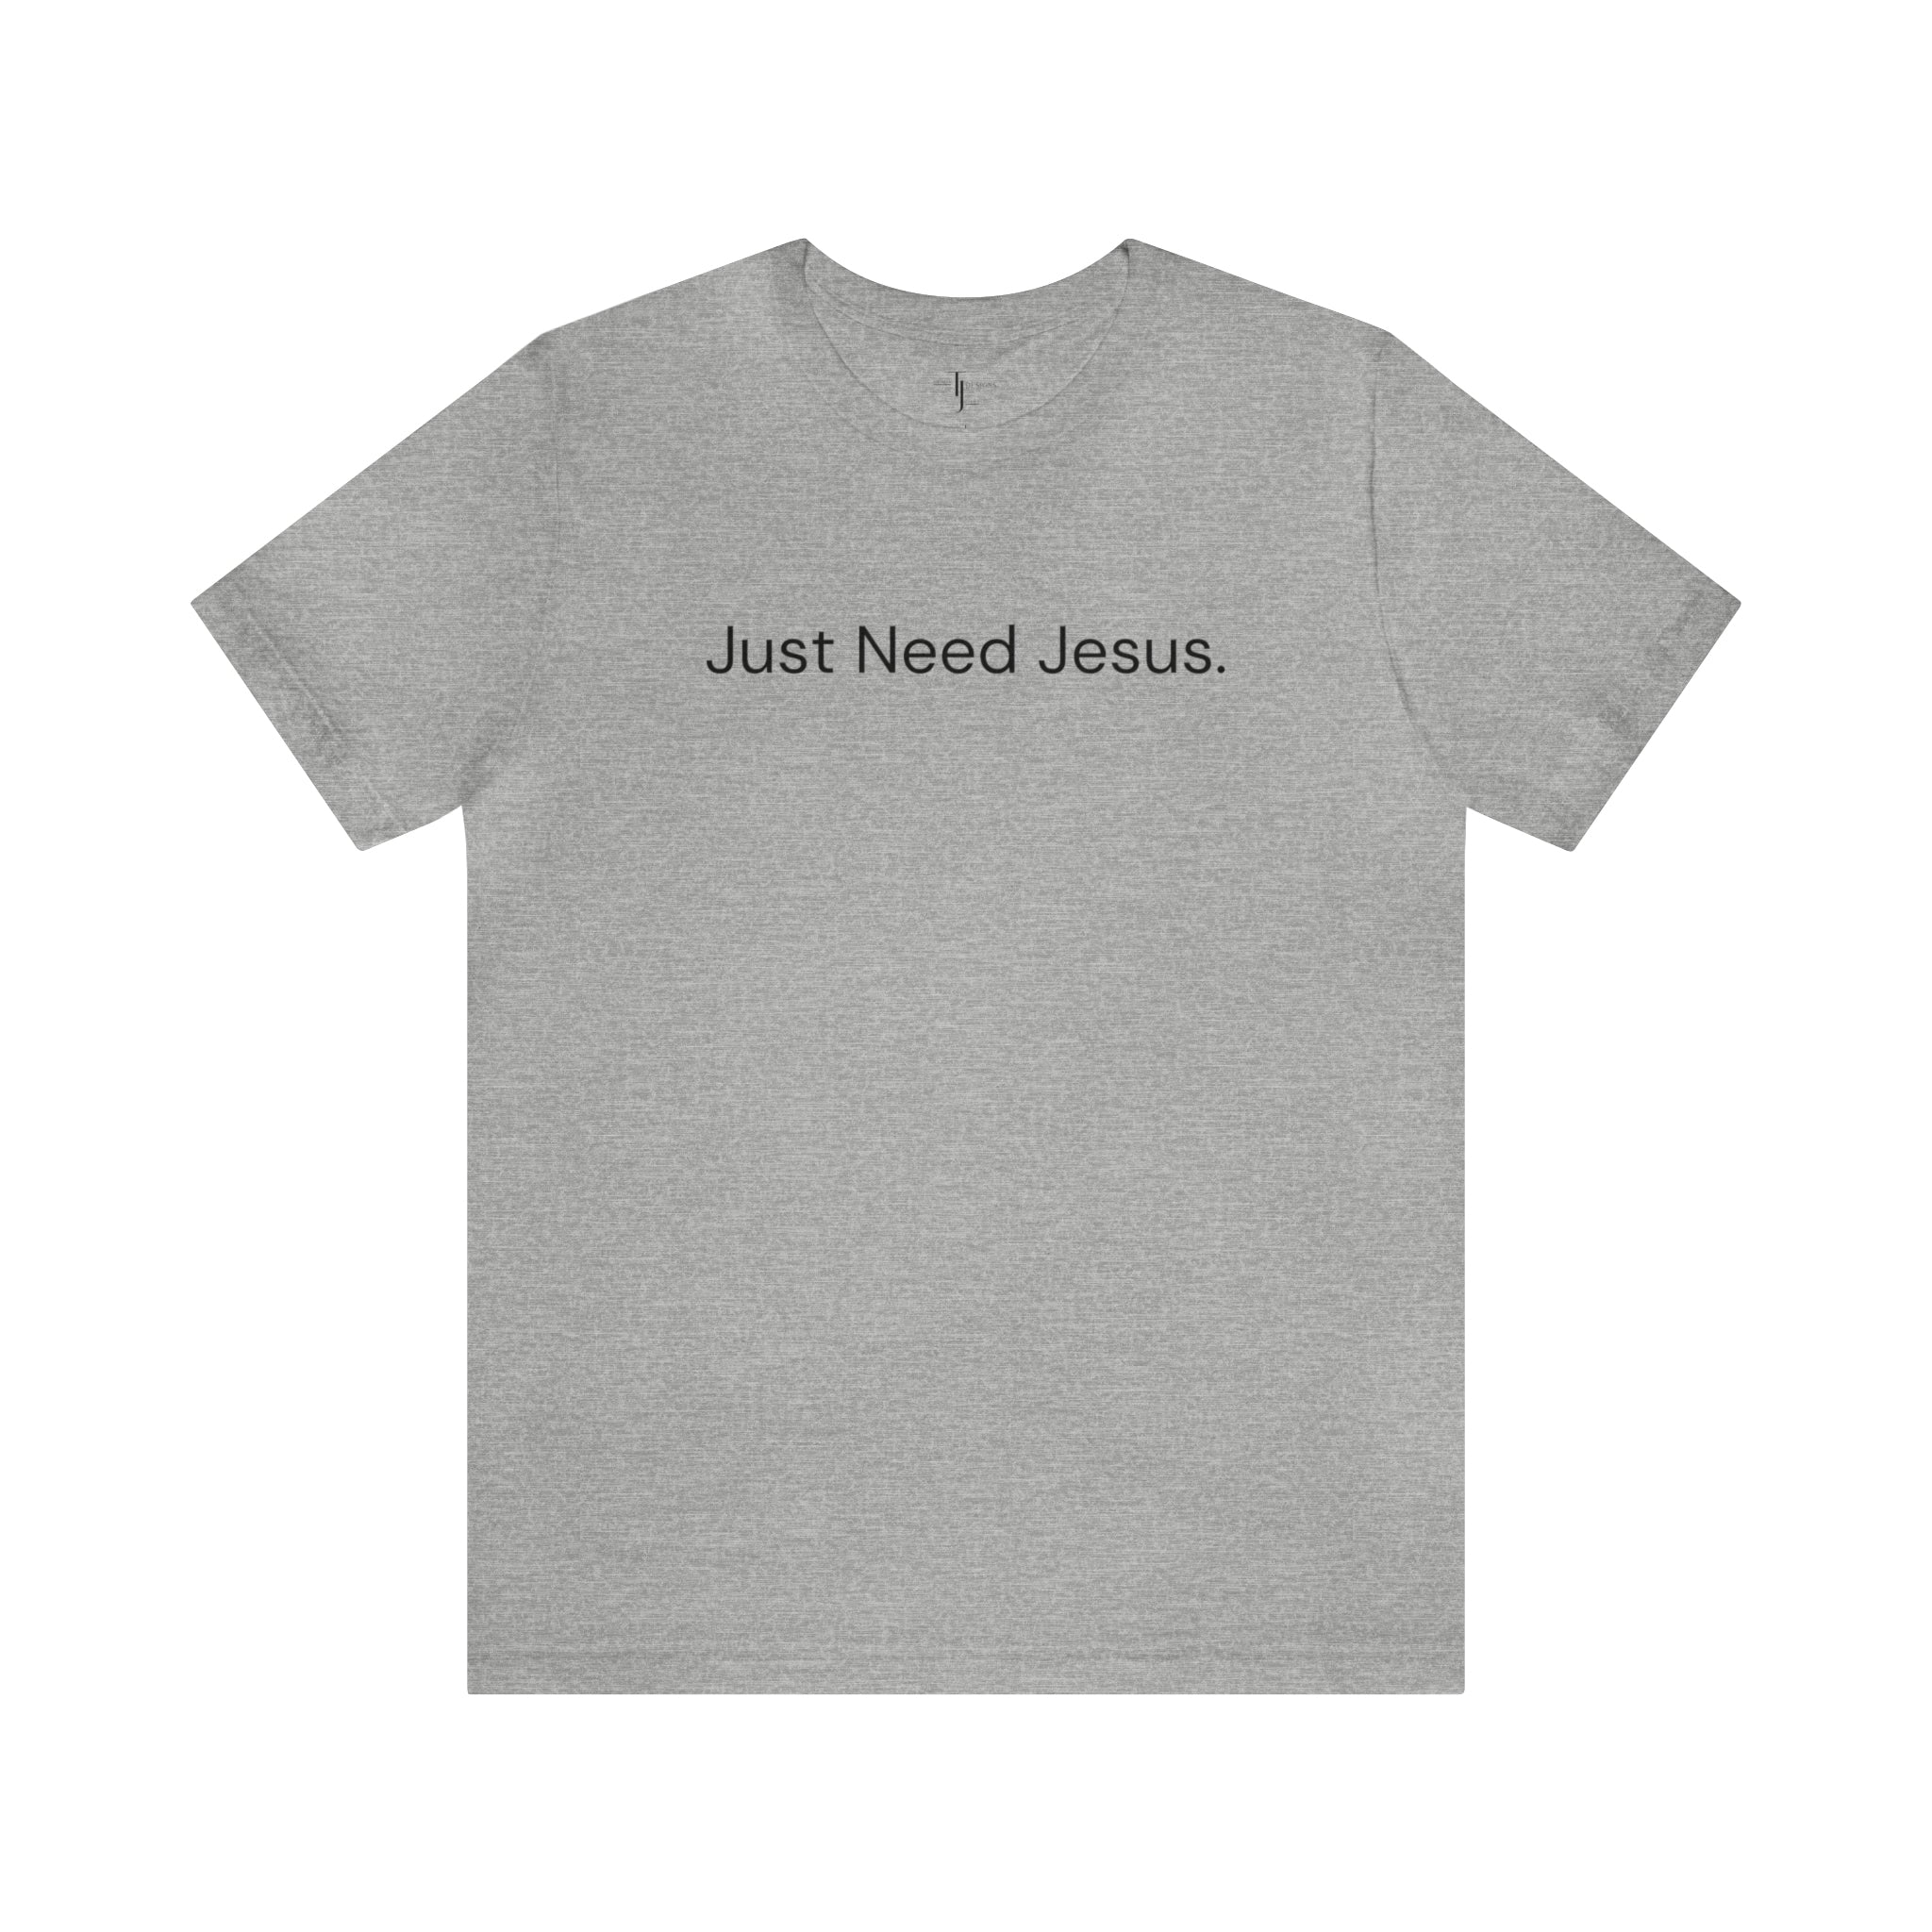 Just Need Jesus. Tee (Unisex)